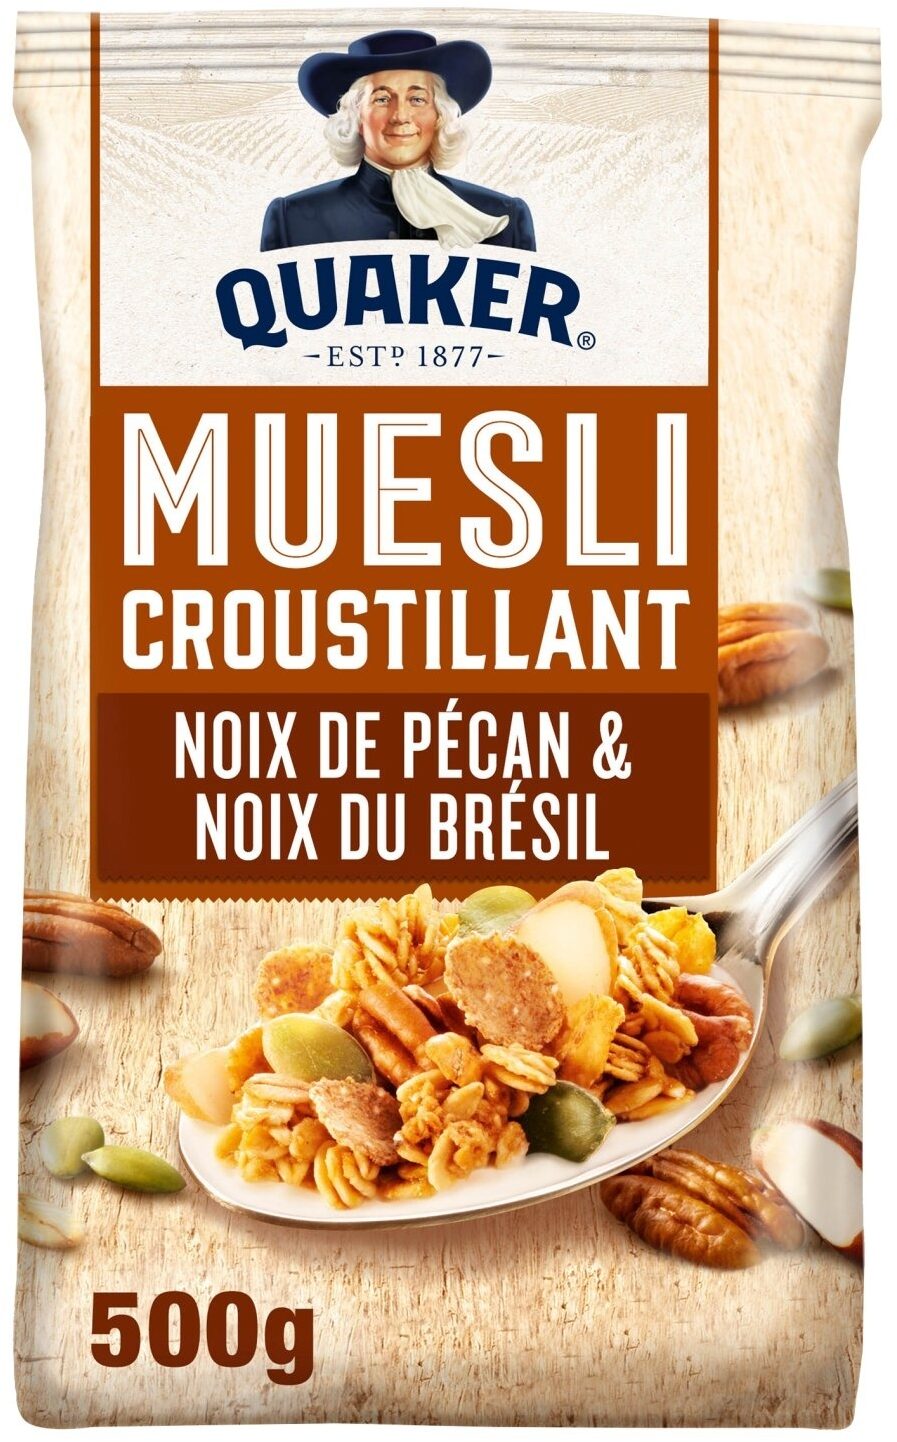 Quaker Muesli Croustillant Noix de pécan & noix du Brésil - Produit